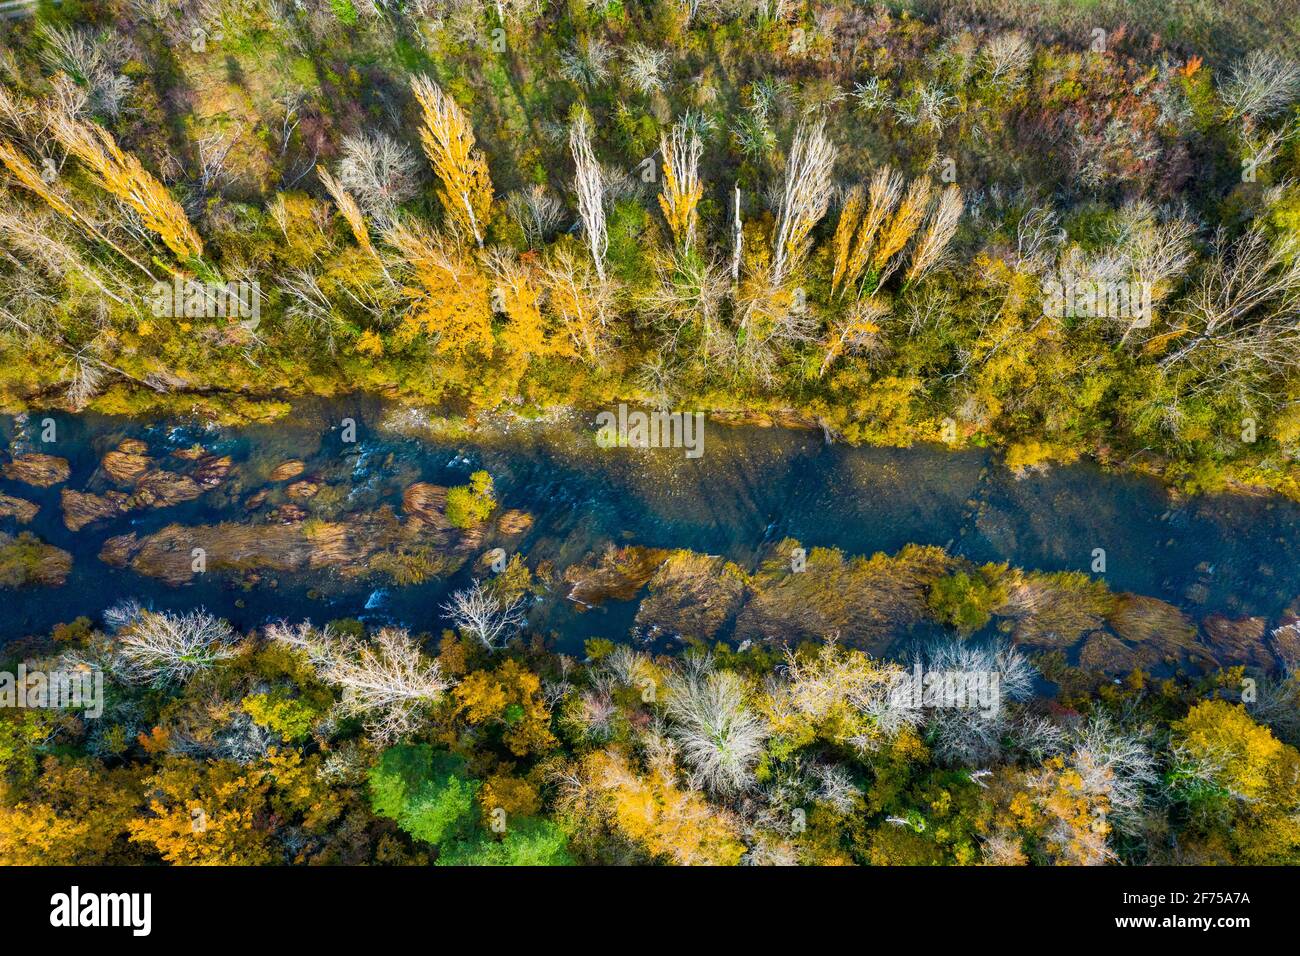 Vista aerea di un fiume con vegetazione ripariale in autunno. Foto Stock